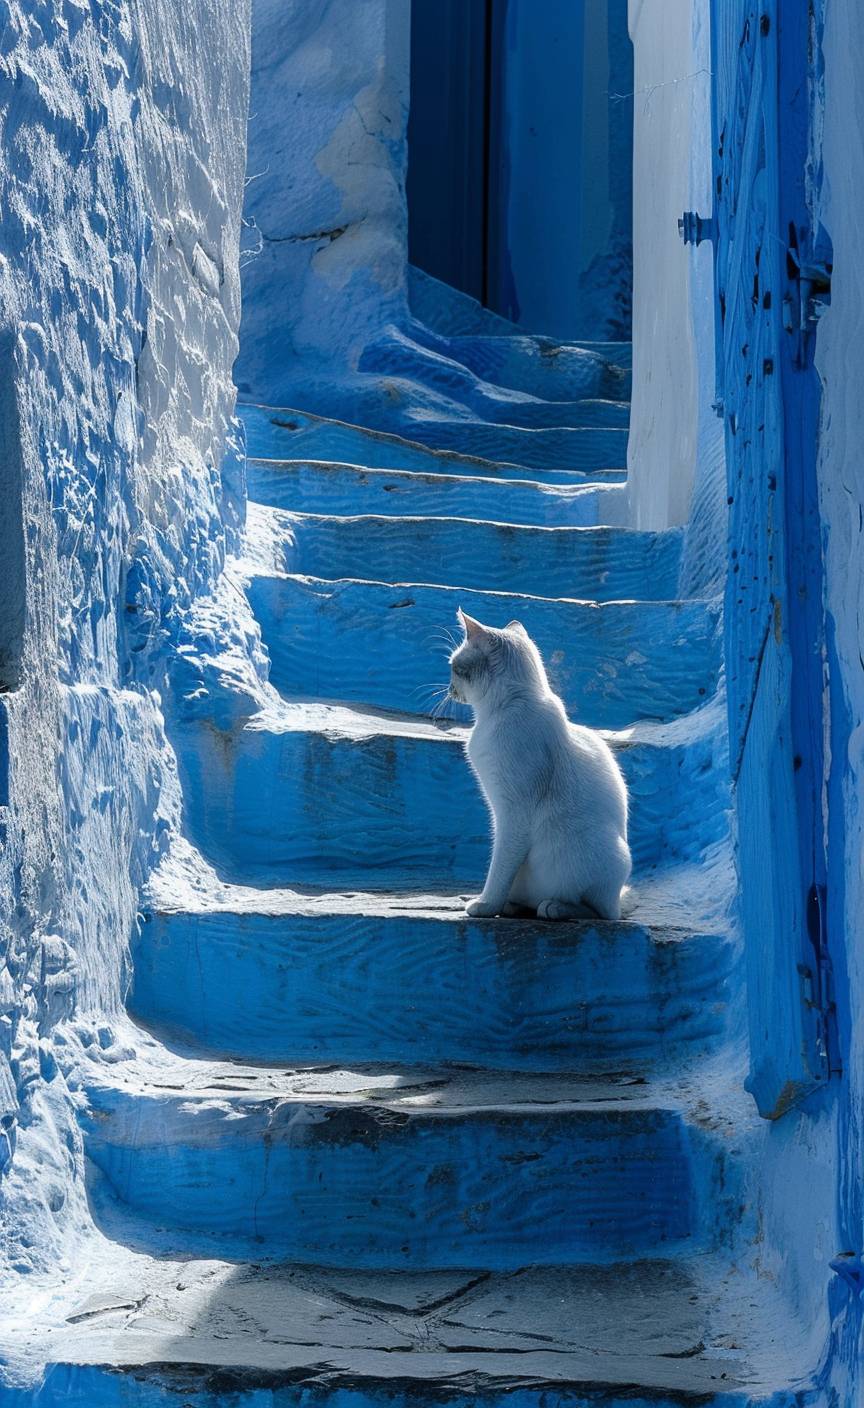 ギリシャ、カルパソス島の階段に座っている猫の現代アート作品、青と白のトーン、レンブラント・ファン・ラインとインゲ・シュスター、シュテファン・ゲゼル、ジェラルド・スカーフェによる作品、アントン・セメノフとアーサー・ボイドのスタイルで描かれている